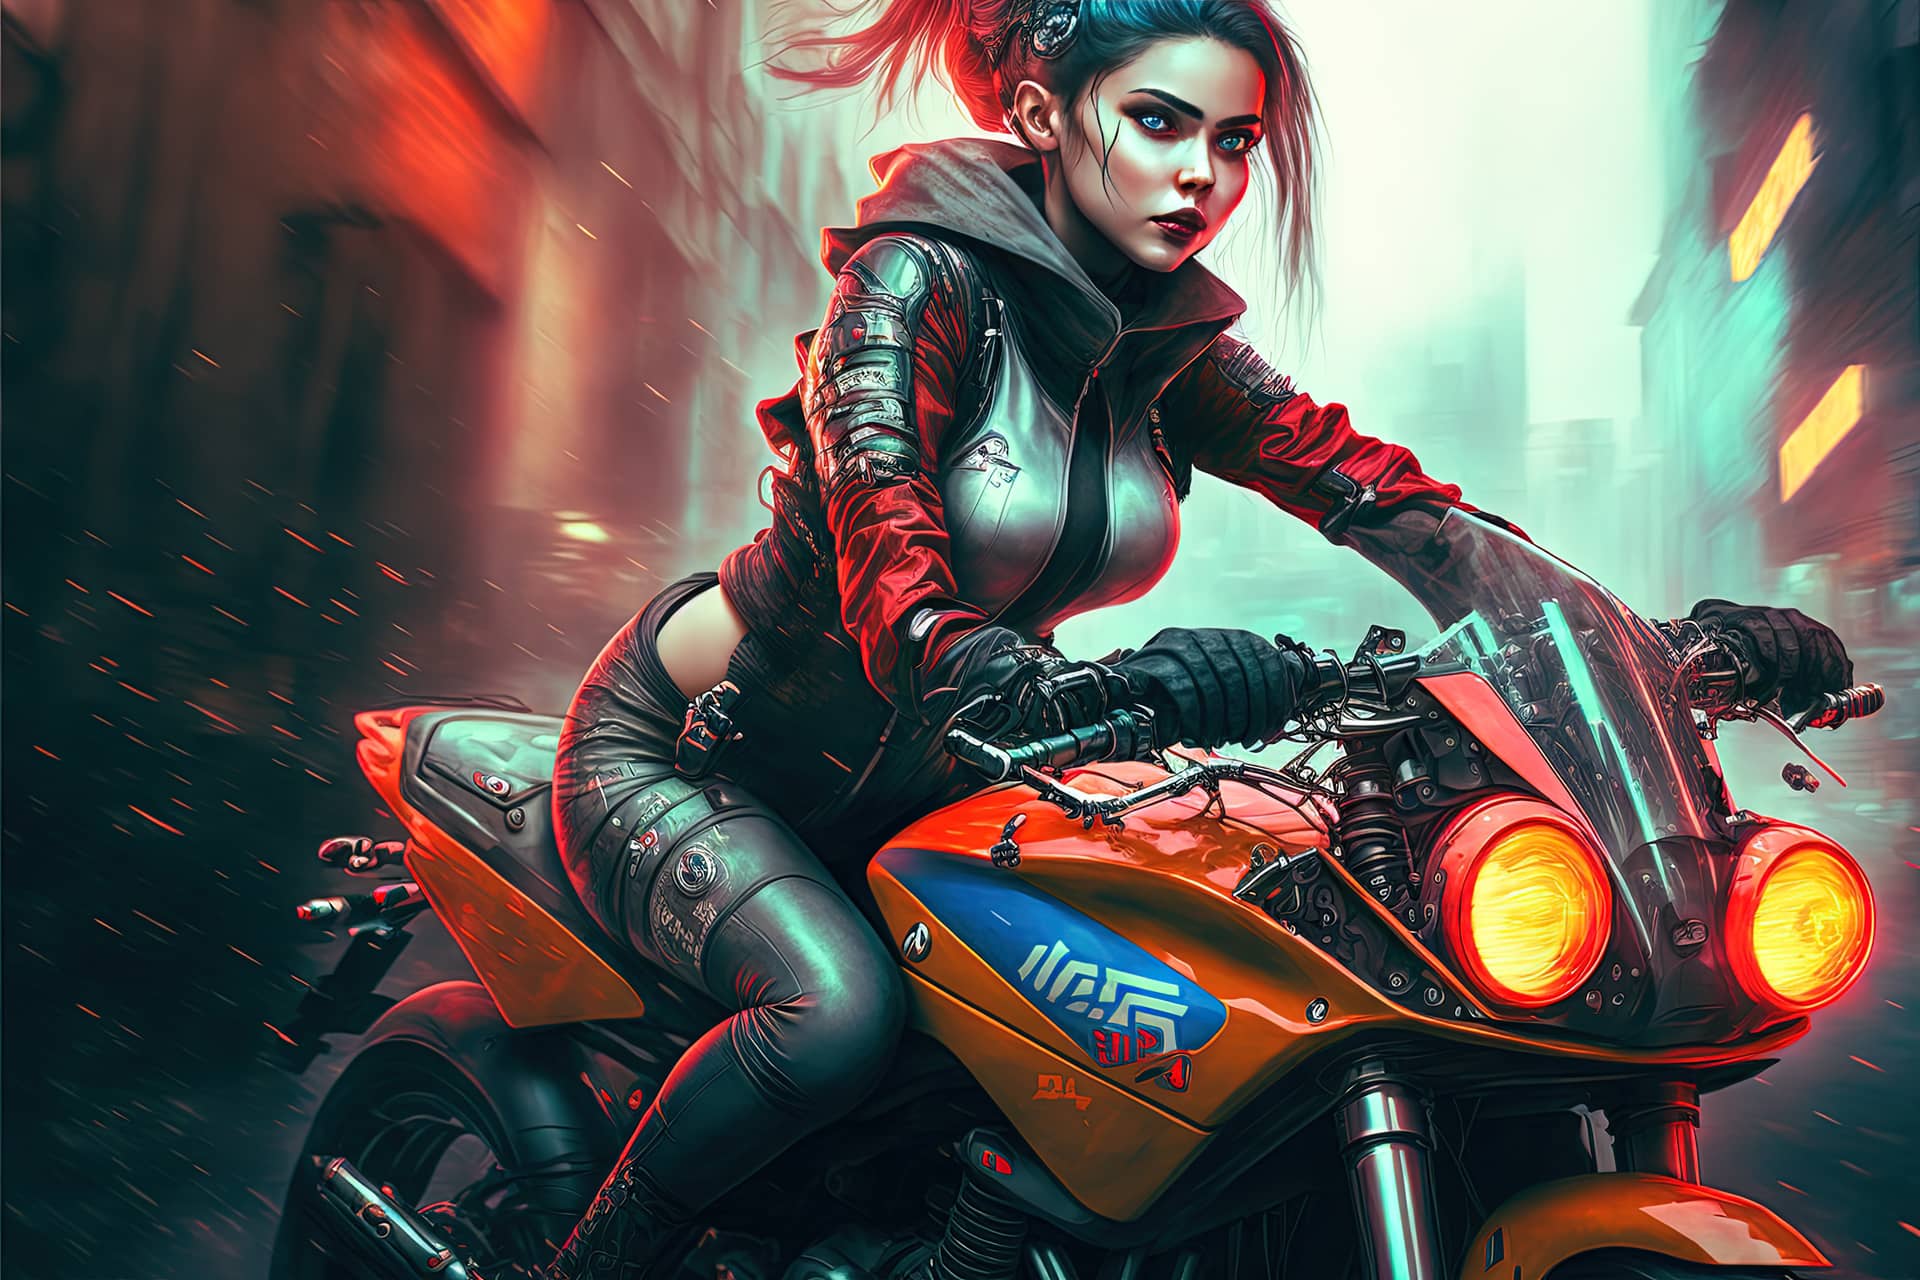 Beautiful cyberpunk girl riding futuristic motorbike female profile picture